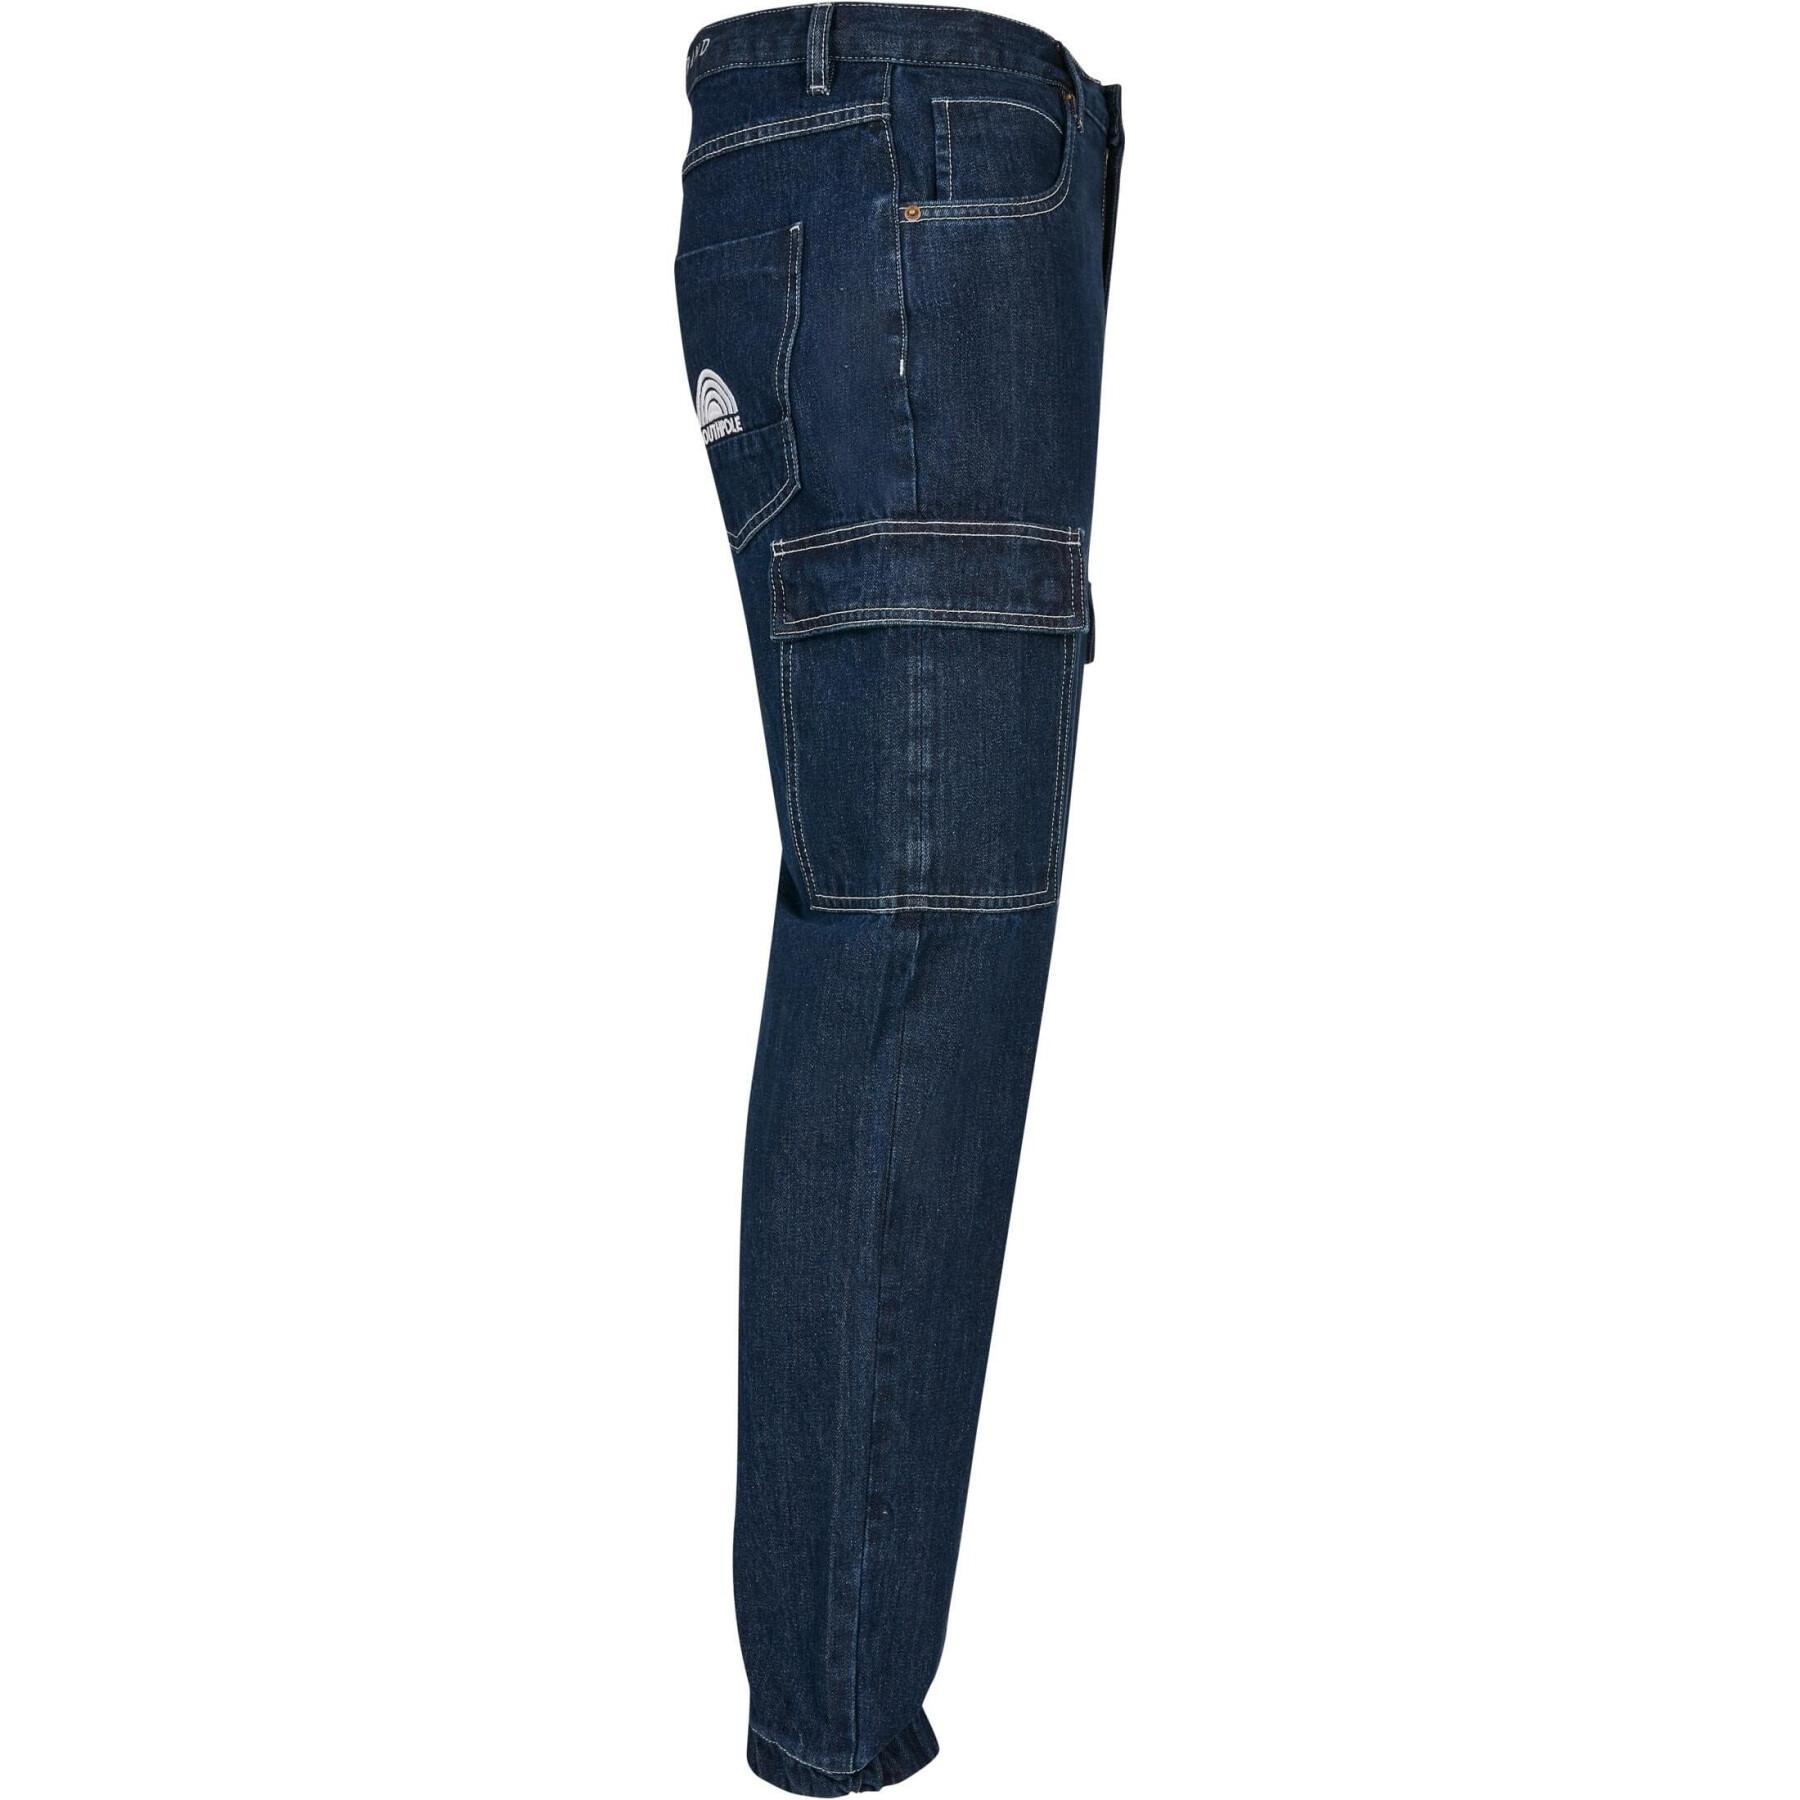 Cargo-Jeans mit Taschen Southpole